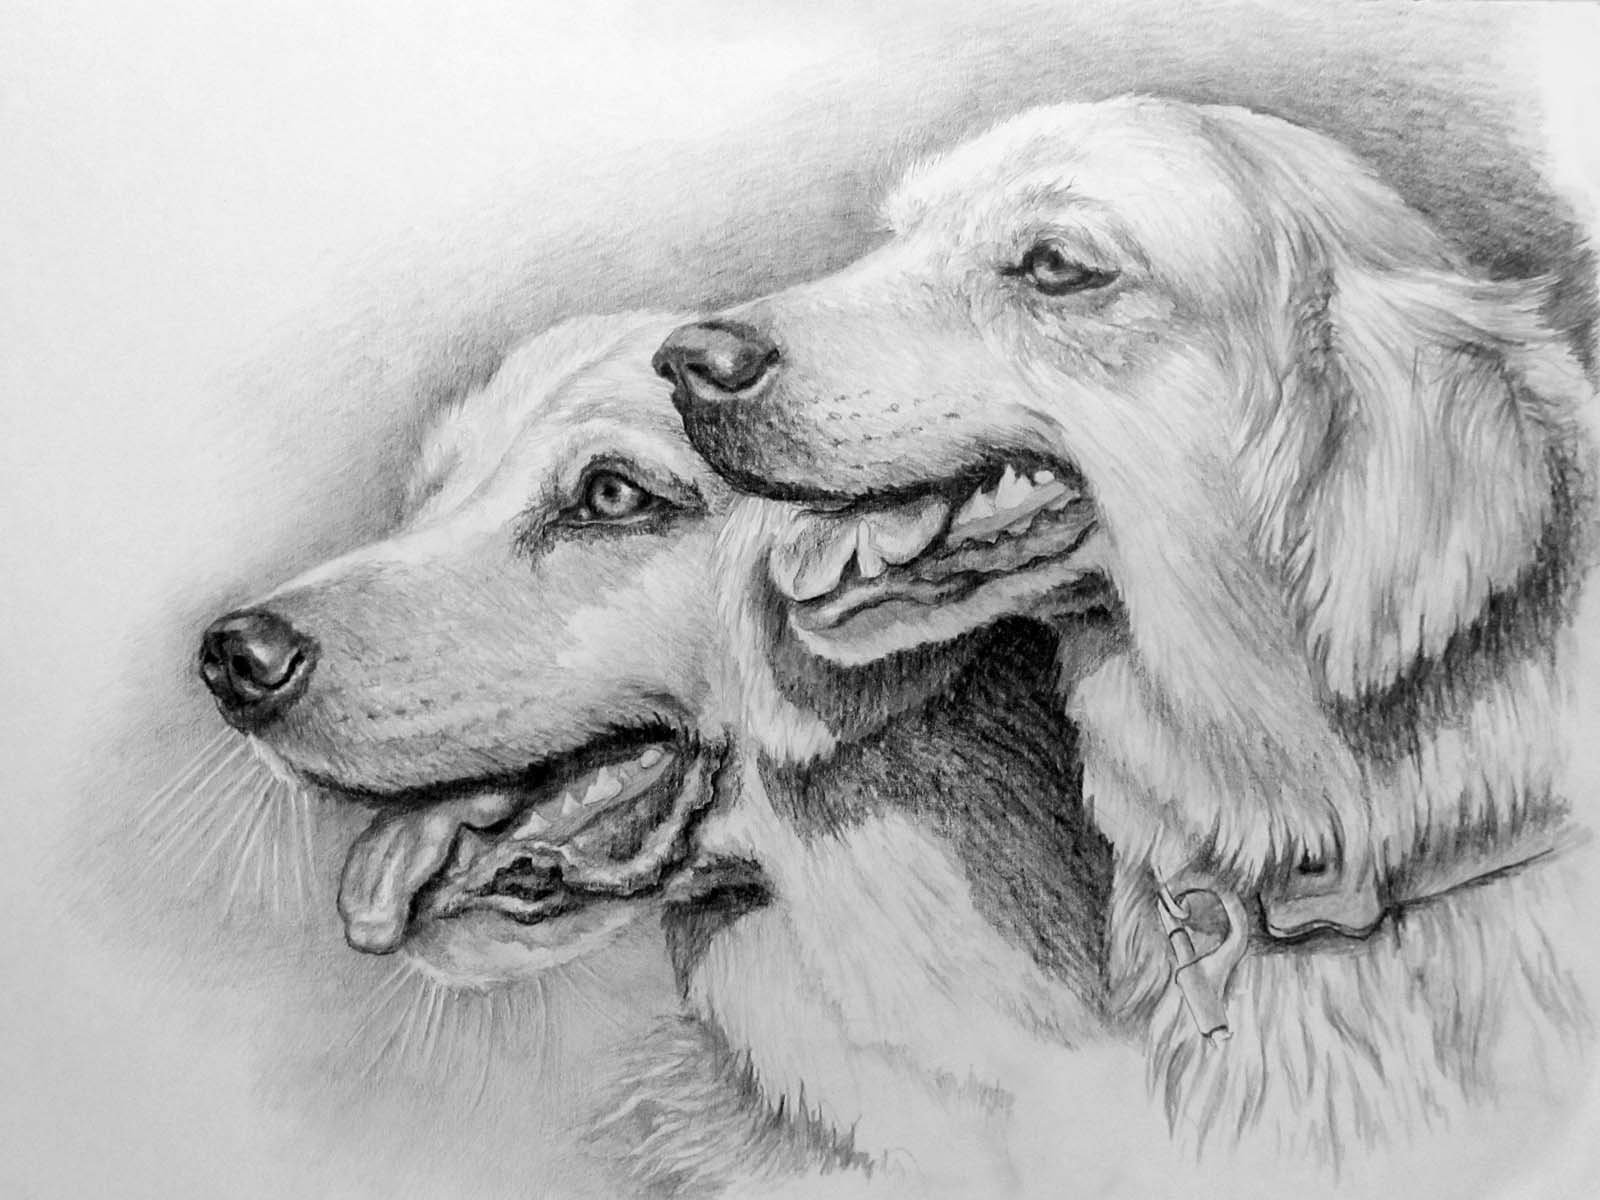 Фотки рисунков. Рисунки карандашом. Рисунки животных карандашом. Картины карандашом для срисовывания. Зарисовки собак.